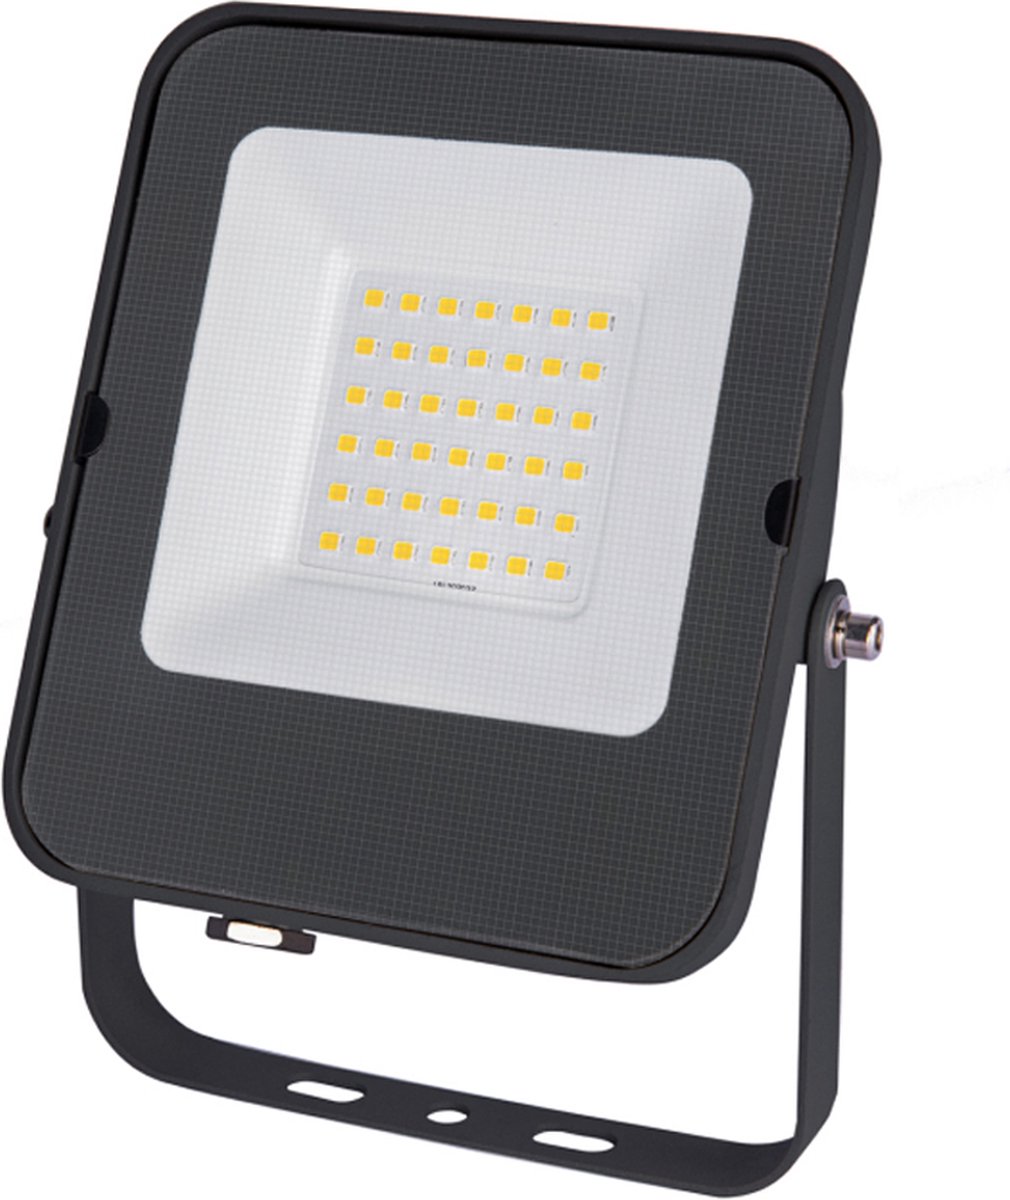 LED Floodlight - Bouwlamp Premium | 30 Watt | 6500K - Daglicht wit